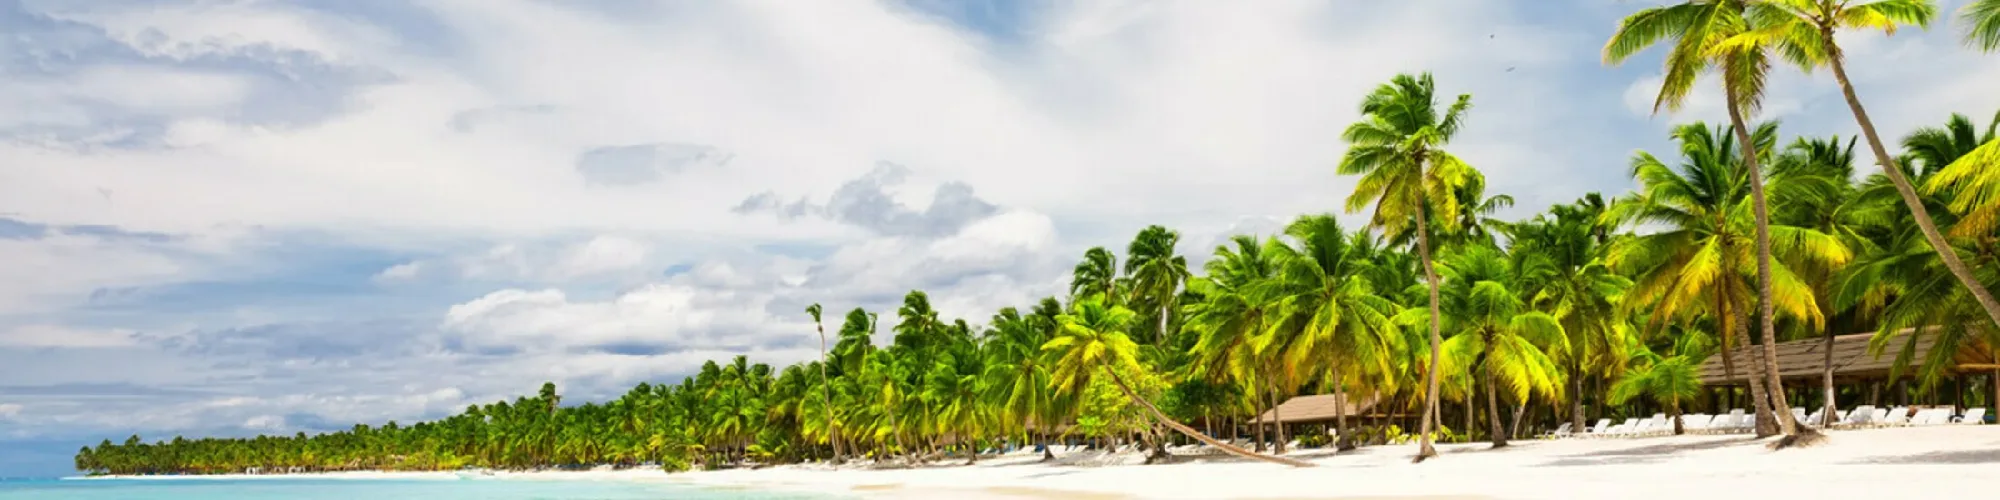 Zeit für Ihre Kreuzfahrt in der Karibik background image